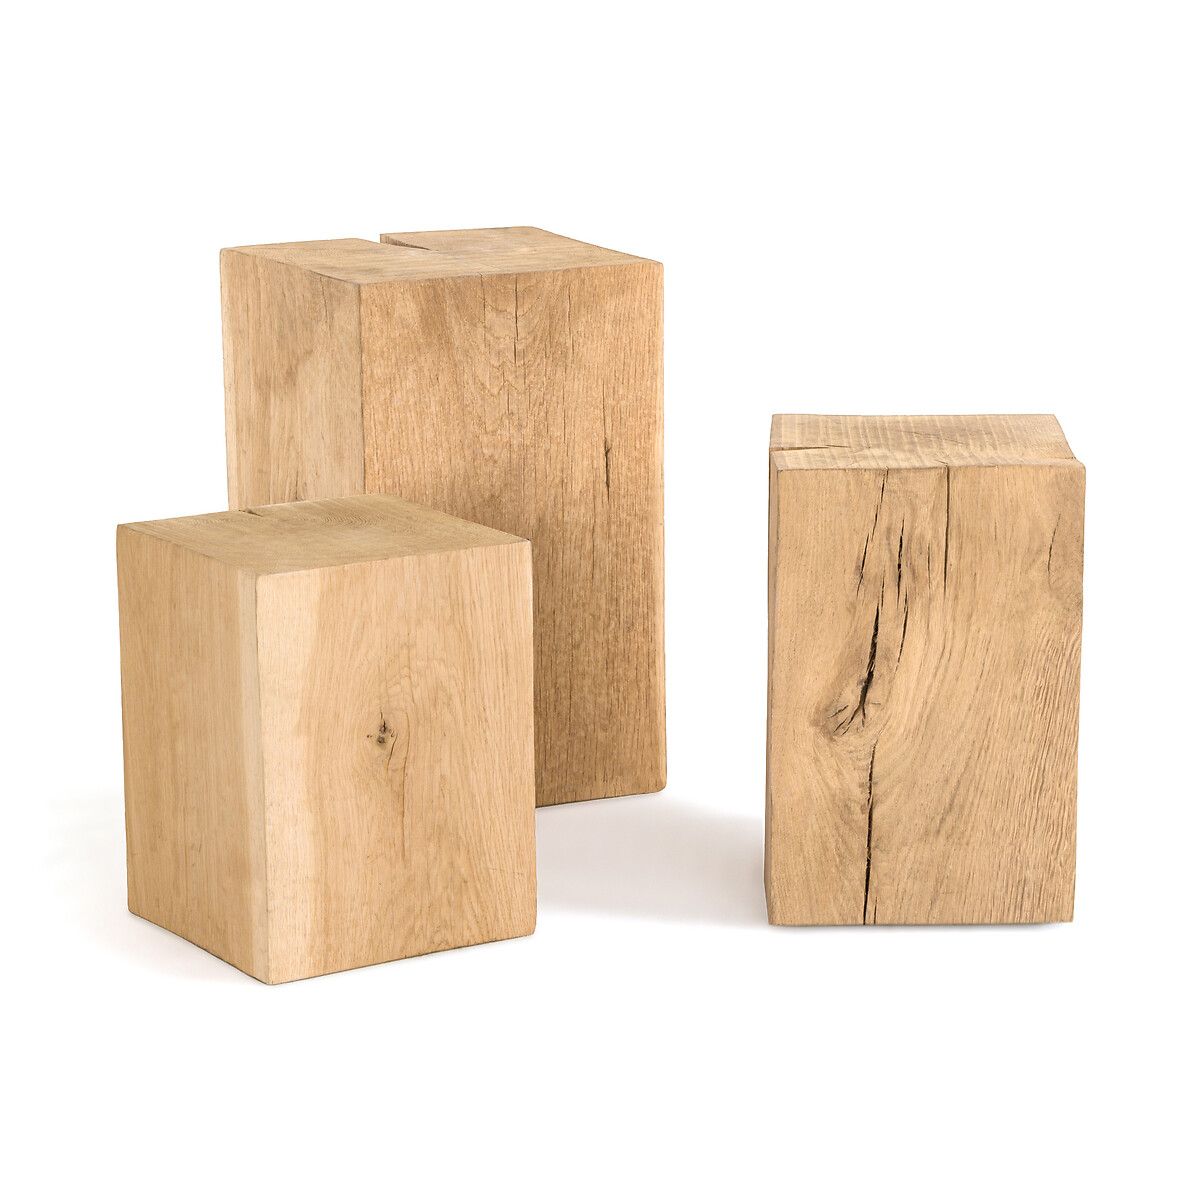 Merlin Solid Oak Block Side Table | La Redoute (UK)